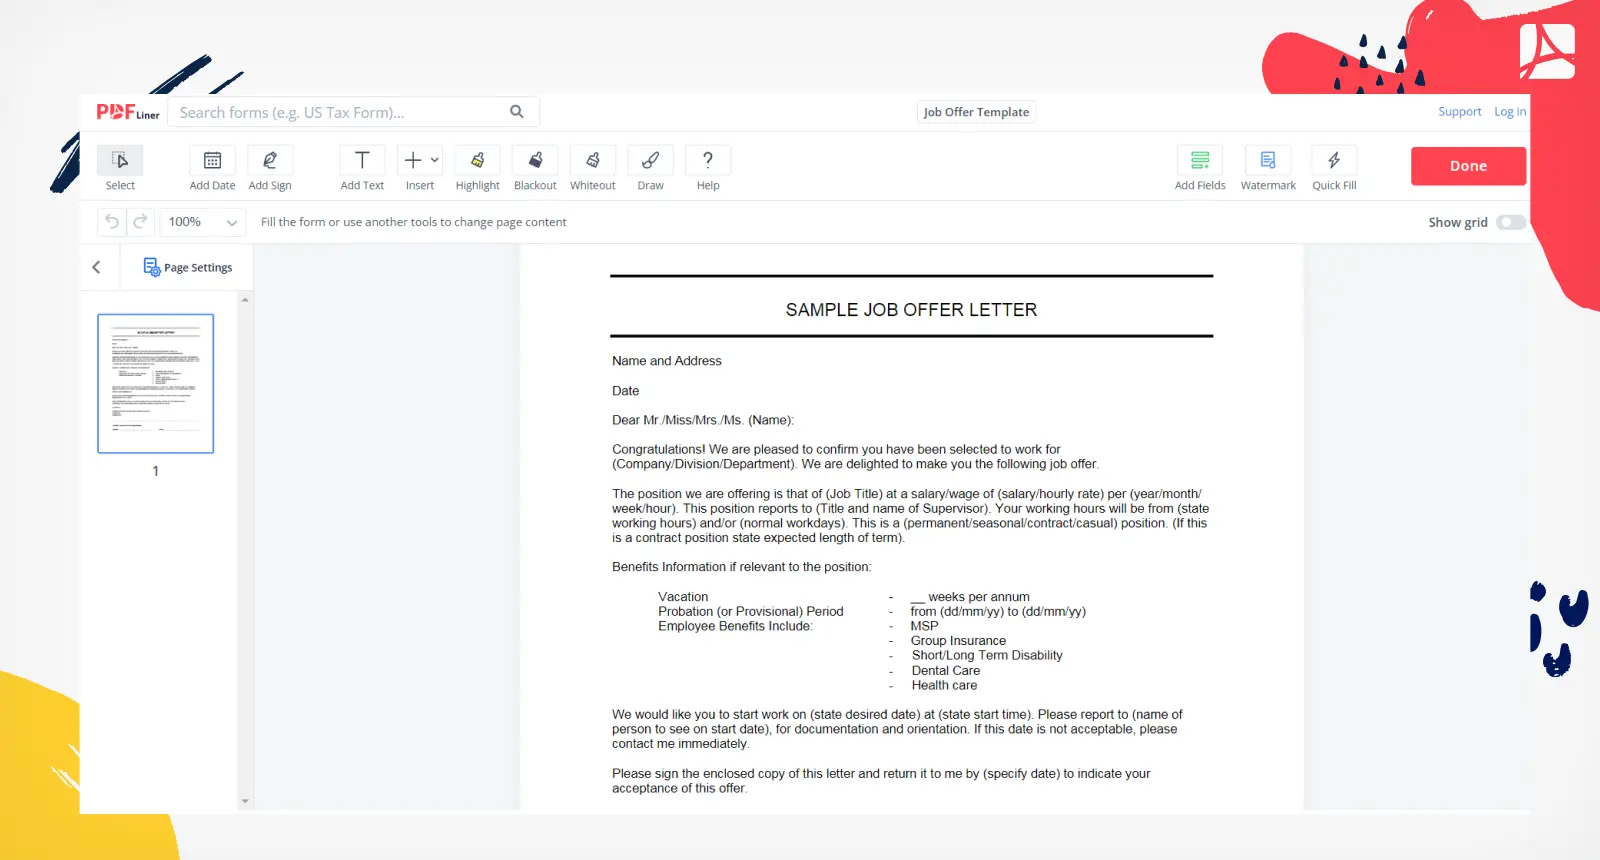 Job Offer Template Form Screenshot